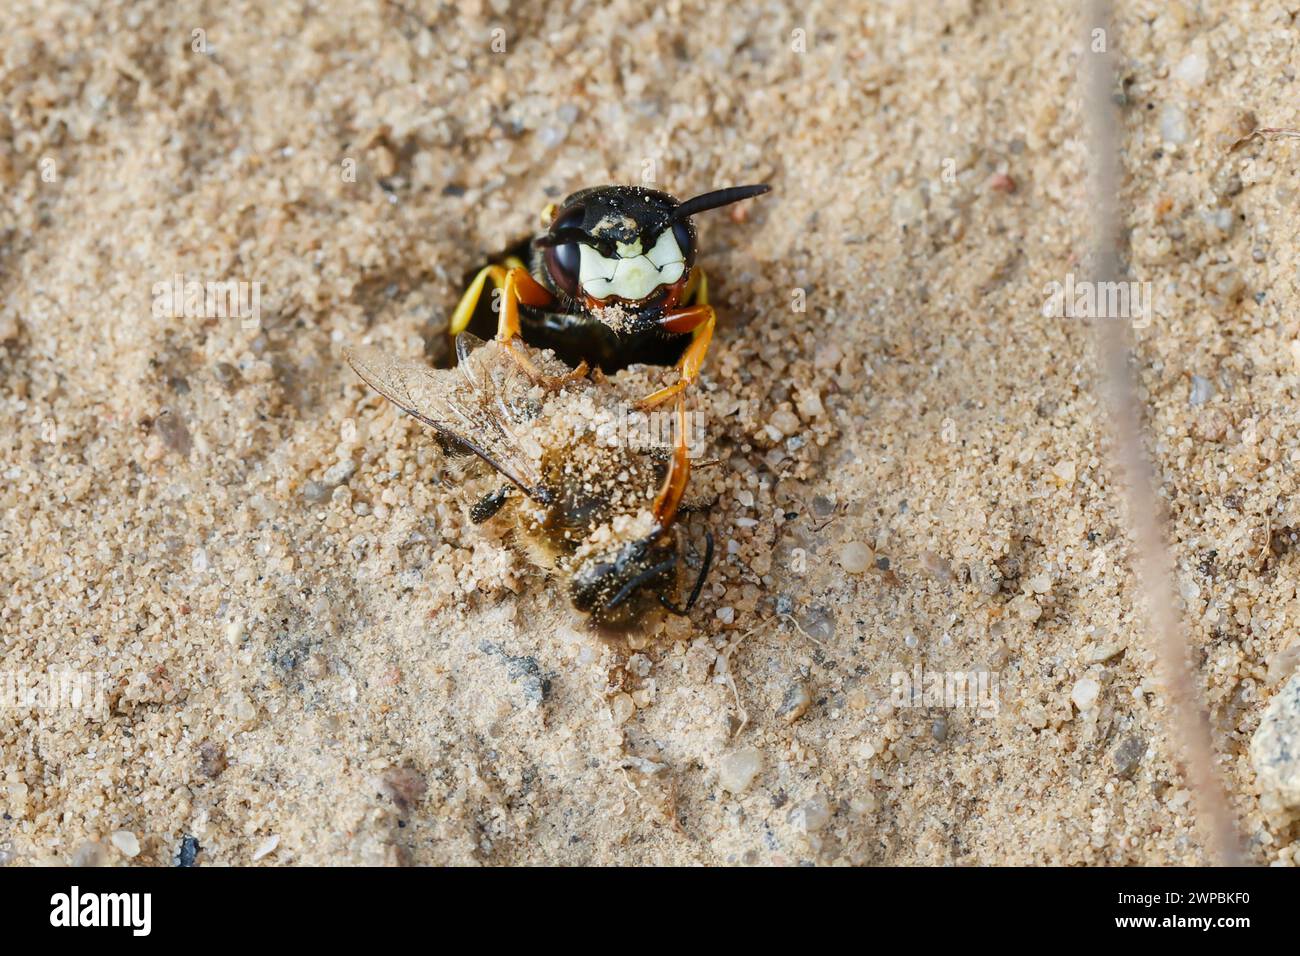 Guêpe tueuse d'abeilles, tueuse d'abeilles (Philanthus triangulum, Philanthus apivorus), avec abeille proie à l'entrée du nid dans un sol sablonneux, Allemagne Banque D'Images